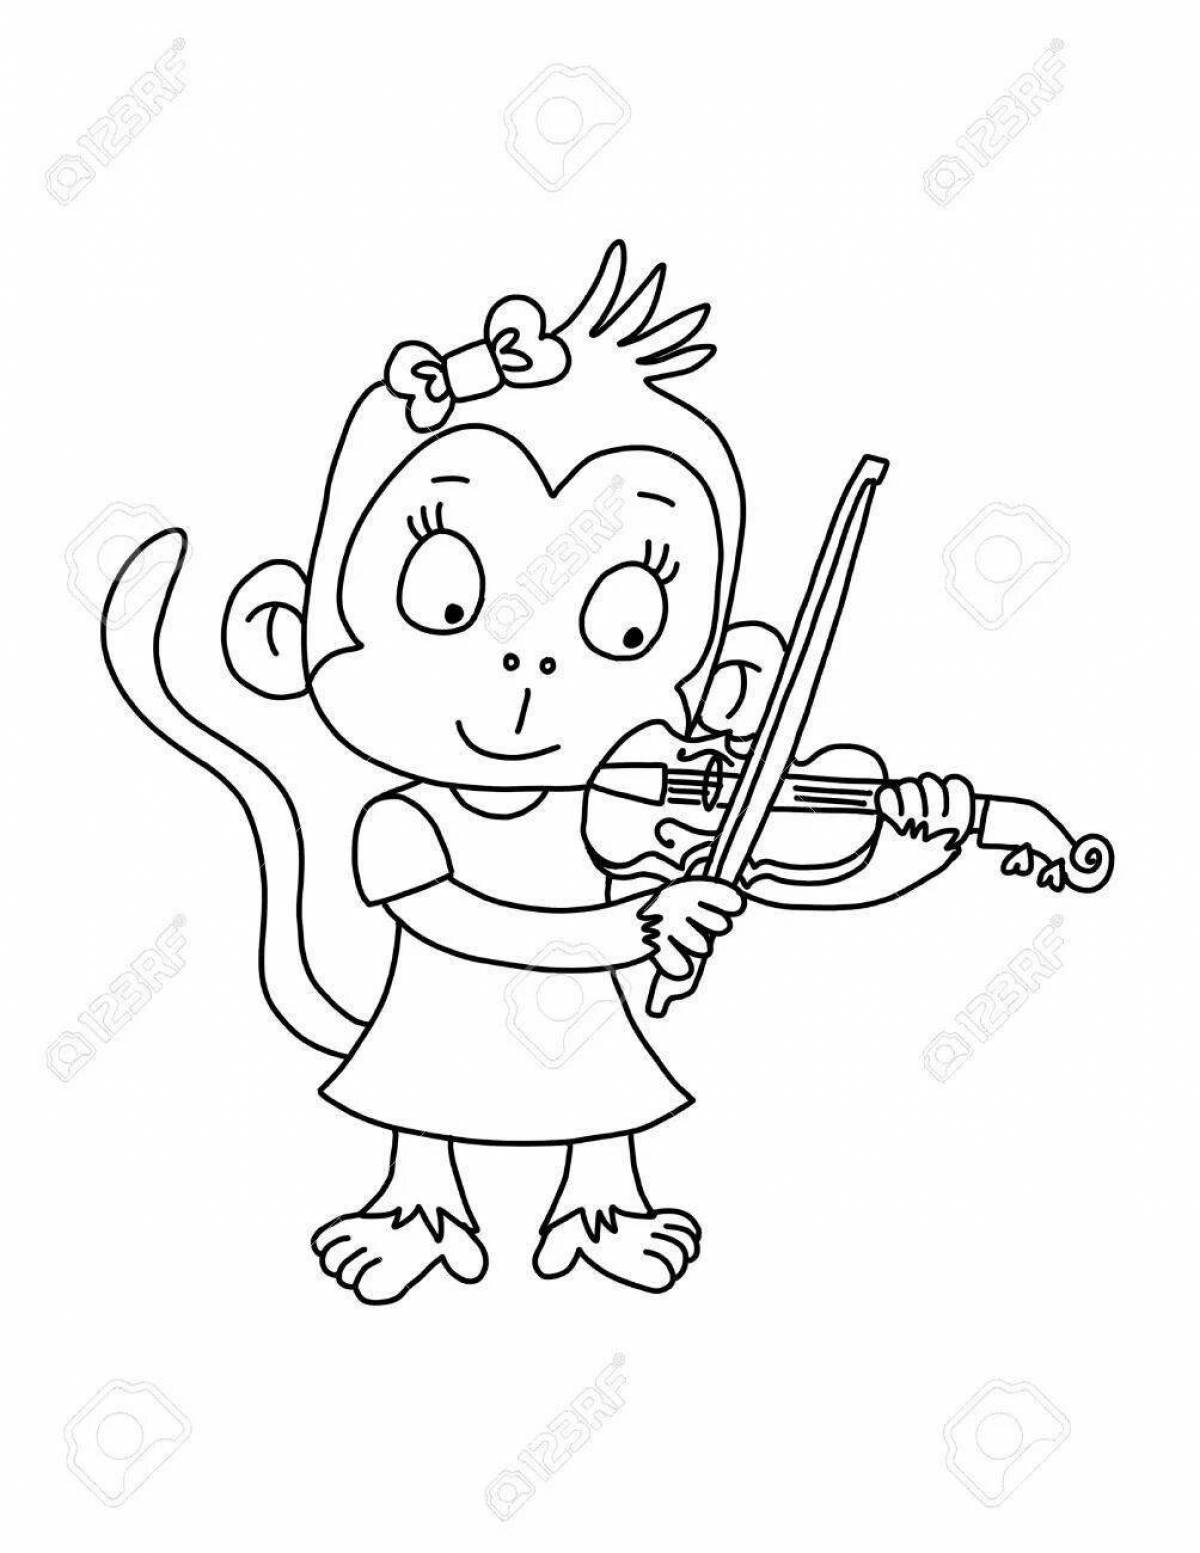 Joyful coloring boy with a violin